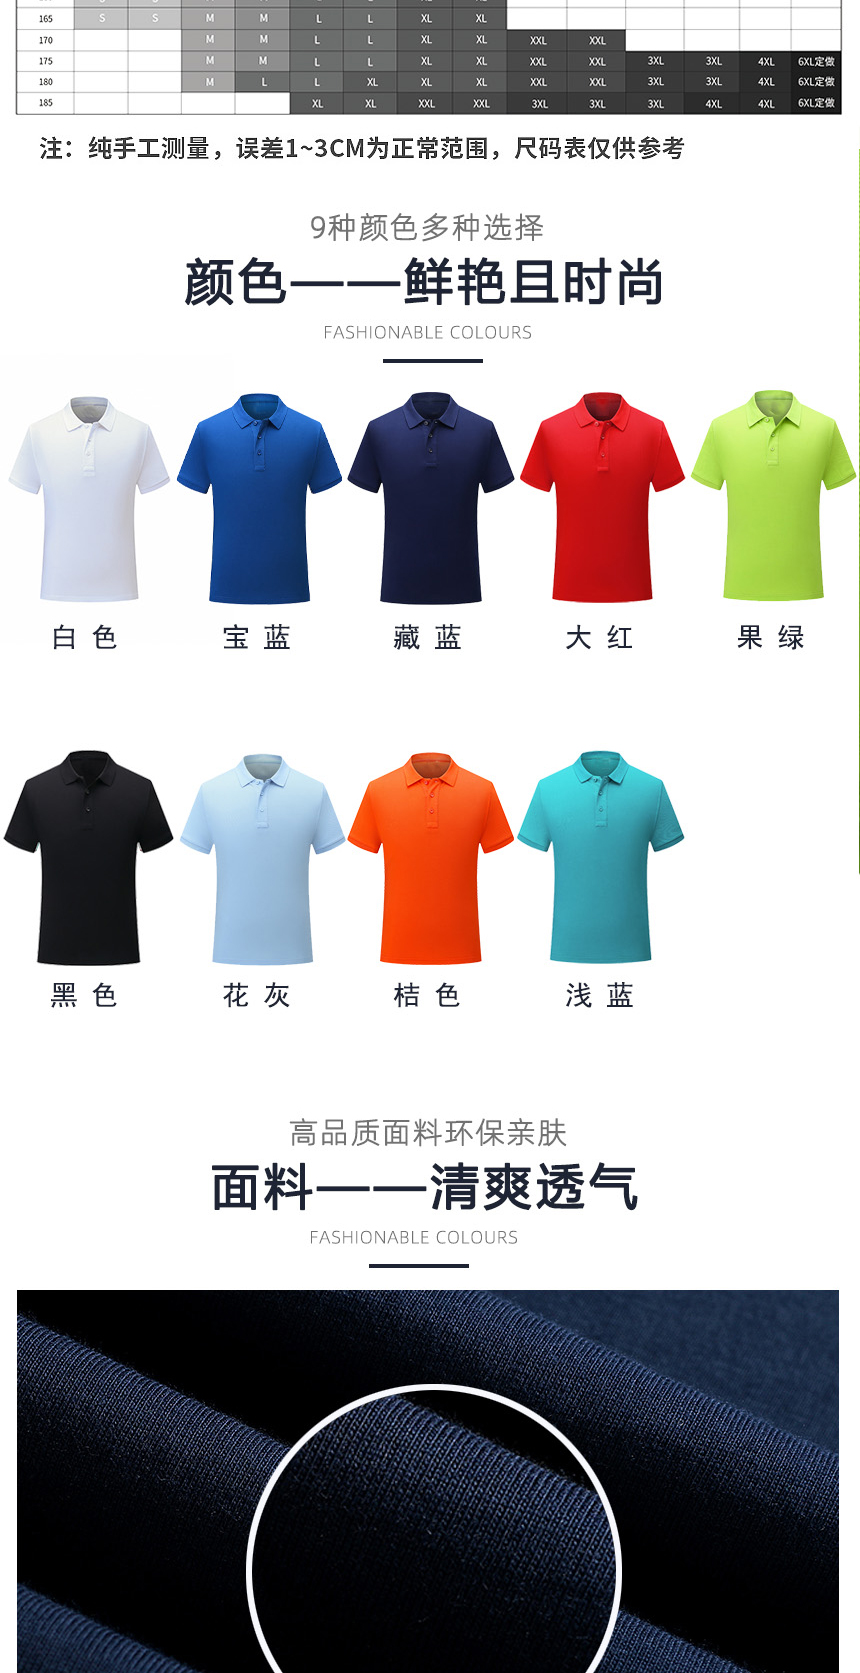 男t恤衫同款不同颜色款式展示，男t恤衫精选优质面料